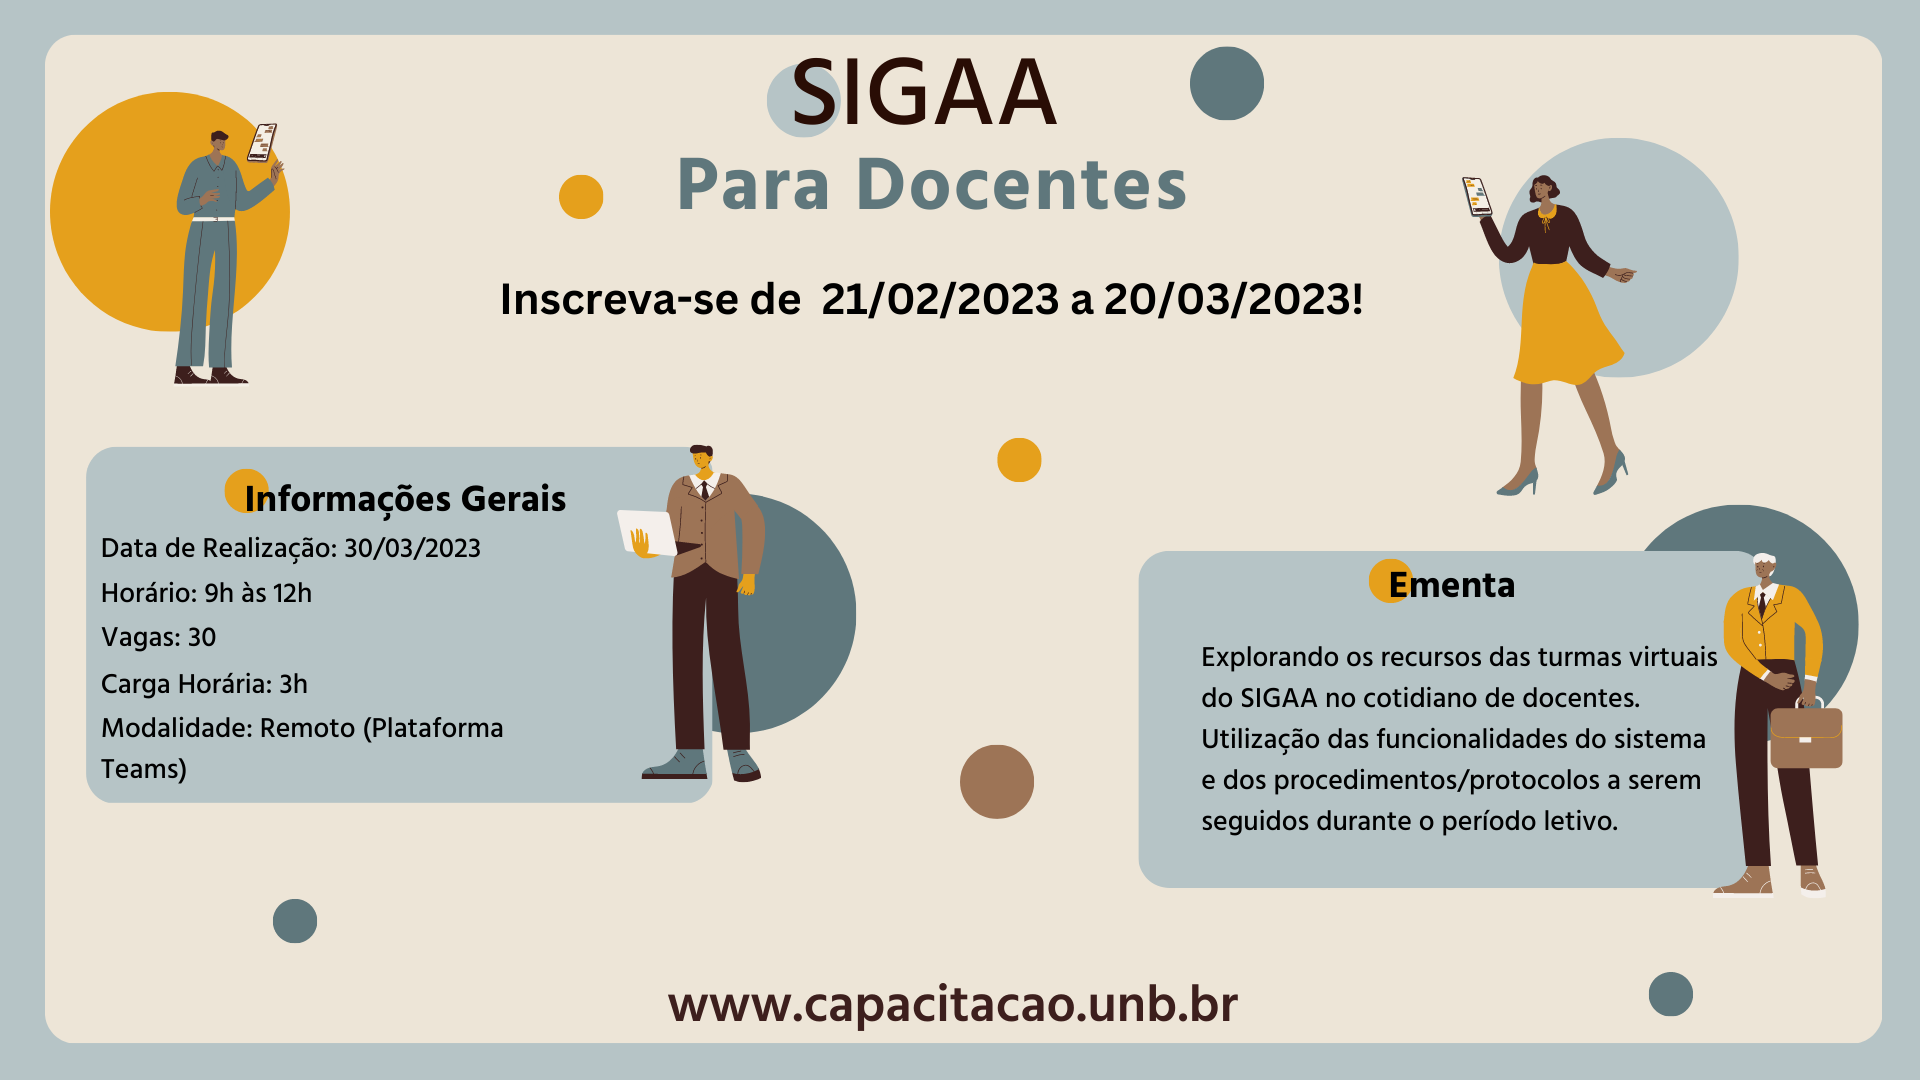 SIGAA_para_Docentes_-_Facebook_3.png